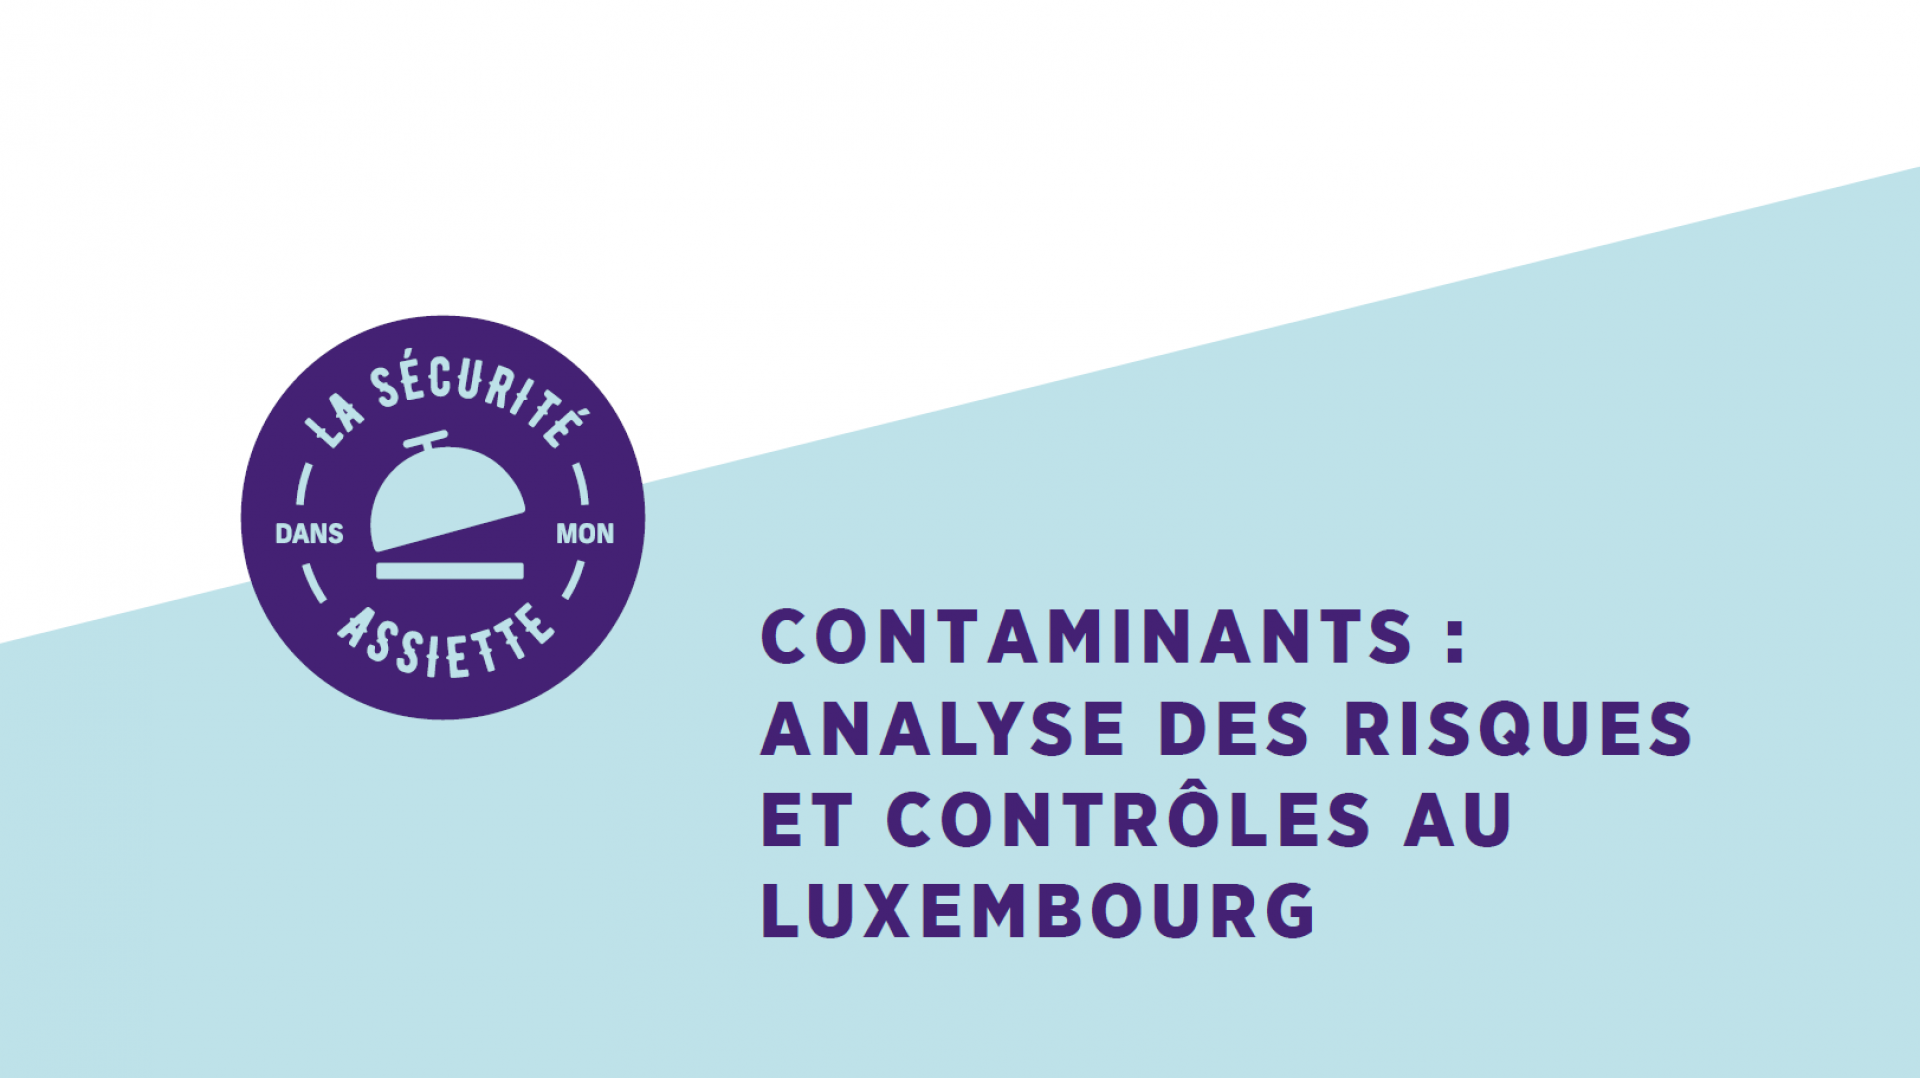 Contaminants: Analyse des risques et contrôles au Luxembourg (sous-titres UK)